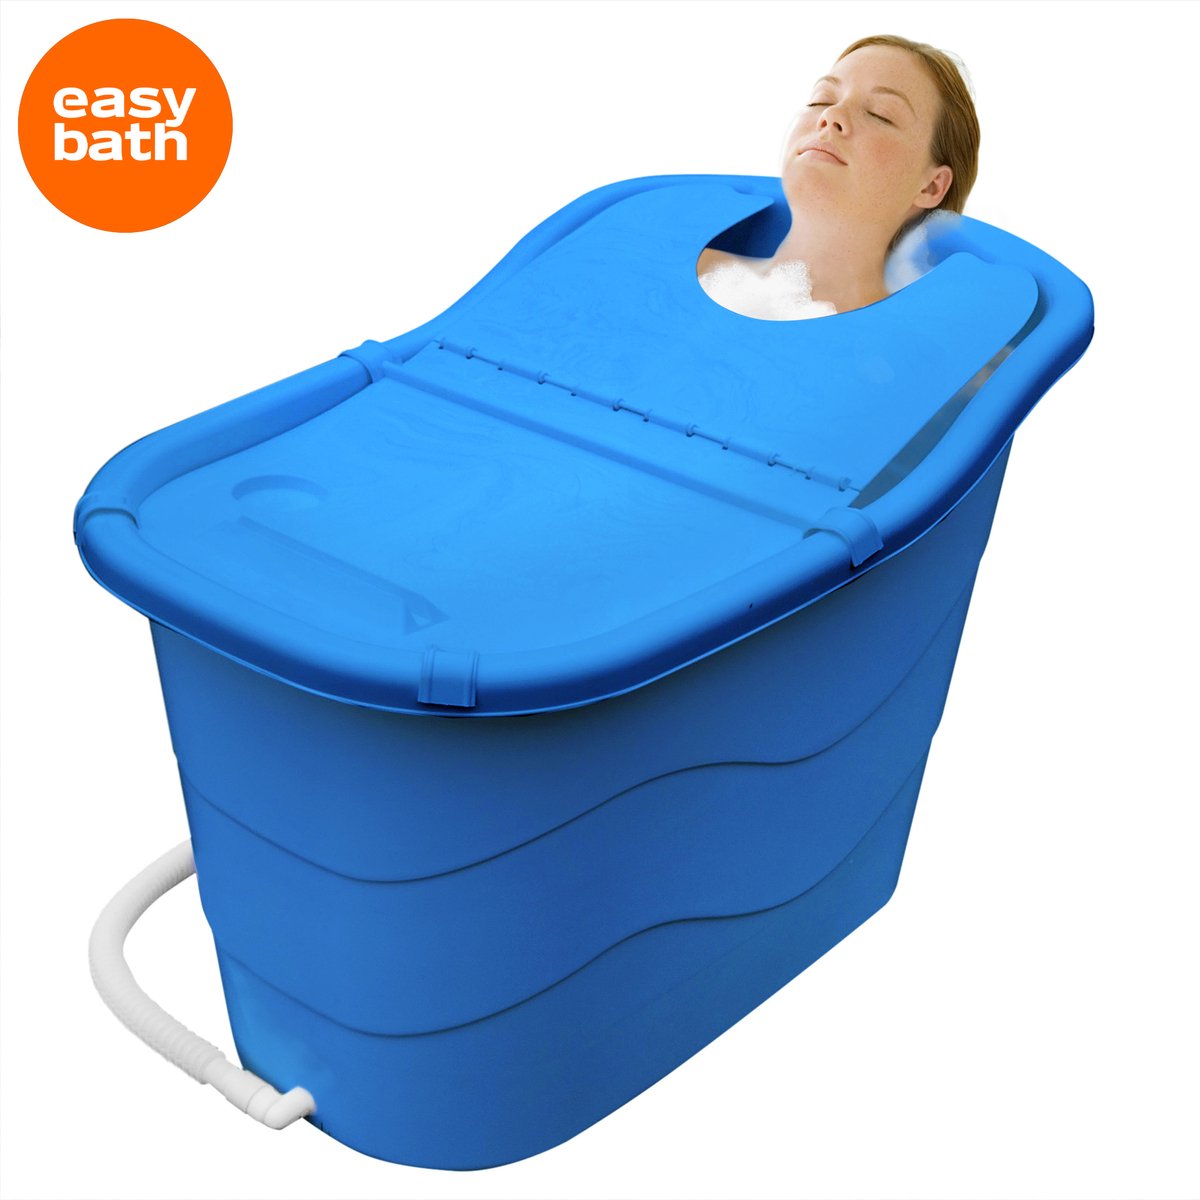 Goodlife zitbad voor volwassenen XL – Bath Bucket – 330L 1M Lang – mobiele badkuip – zitbad voor in de douche - zitbad - mobiele badkuip - zitbad kinderen - zitbad voor volwassenen - blauw